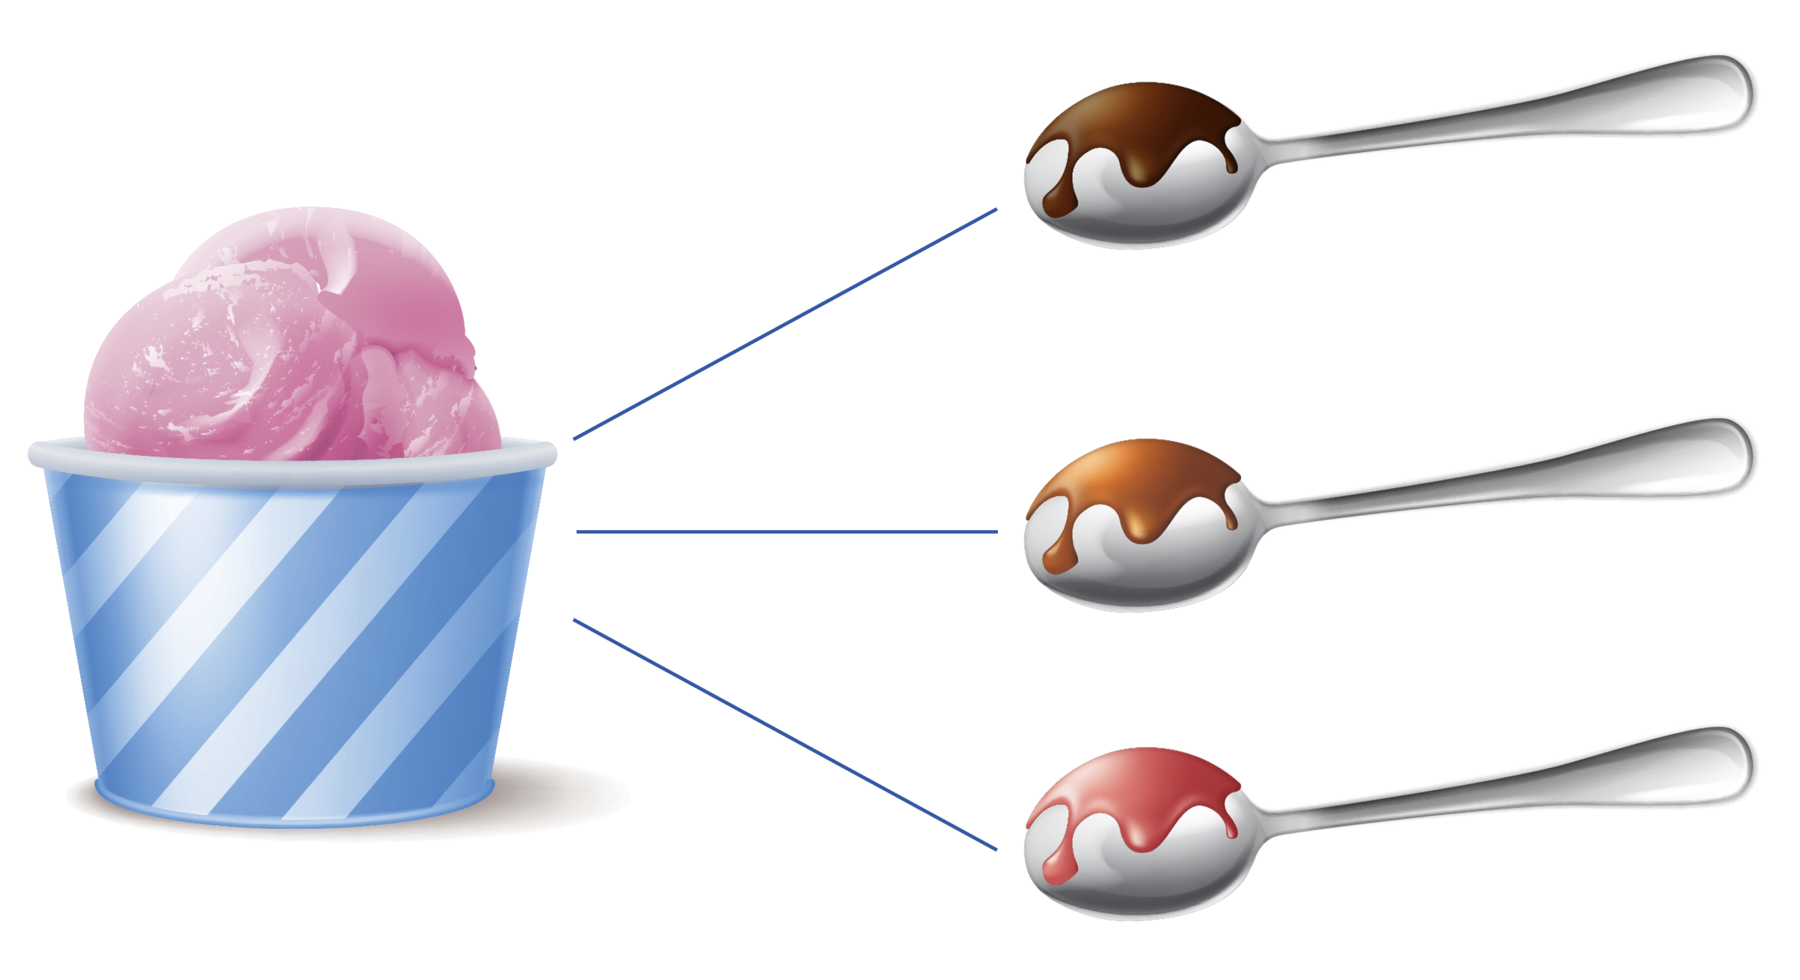 Ilustração. 
Pote azul com sorvete rosa dentro.
Ao lado, 3 colheres, cada uma com uma cobertura diferente. 
Chocolate, caramelo e morango.